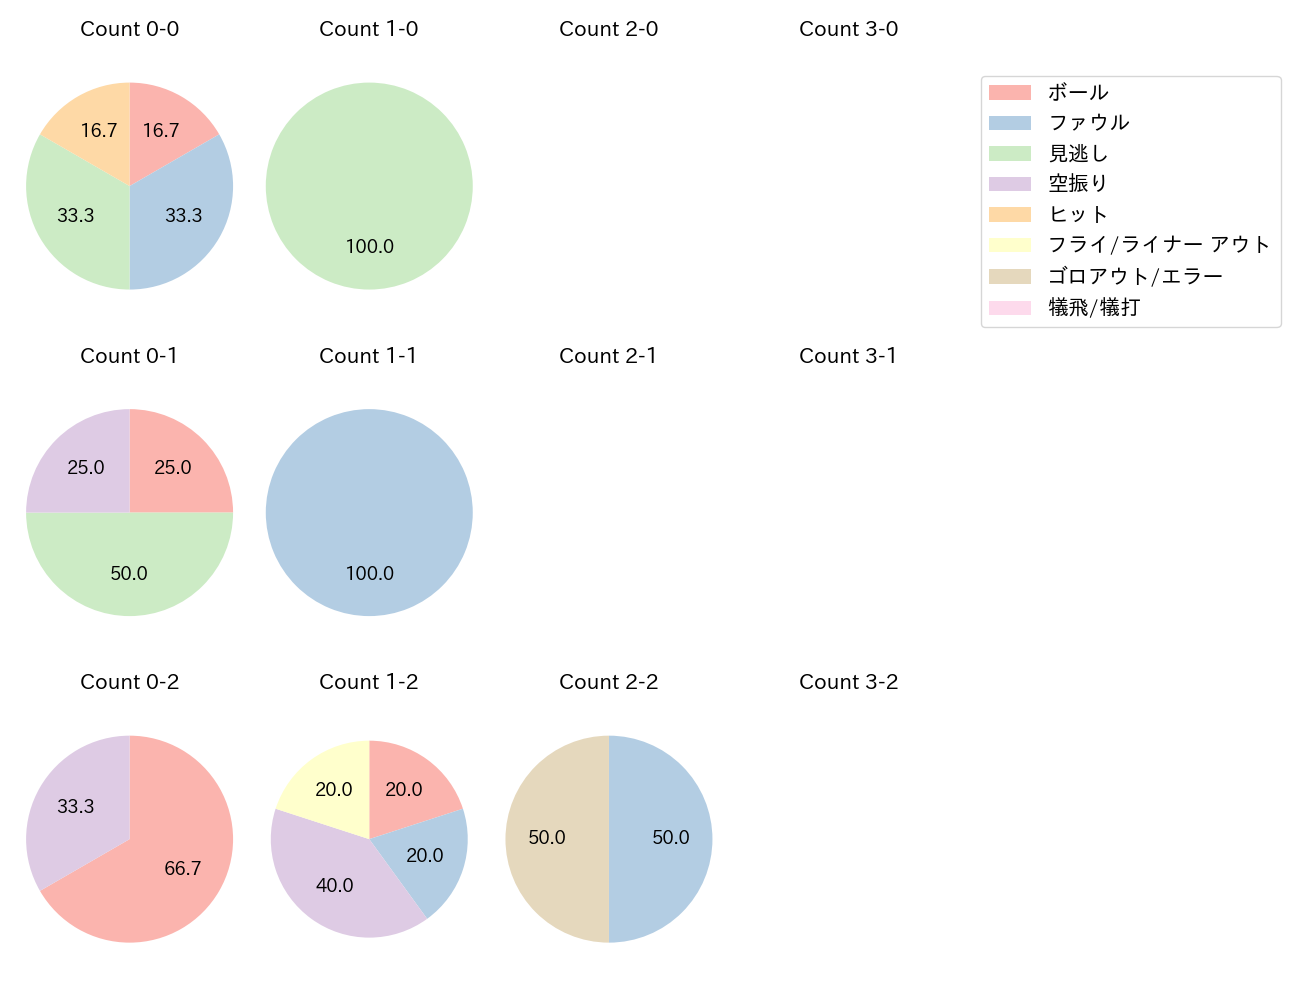 石川 慎吾の球数分布(2021年8月)